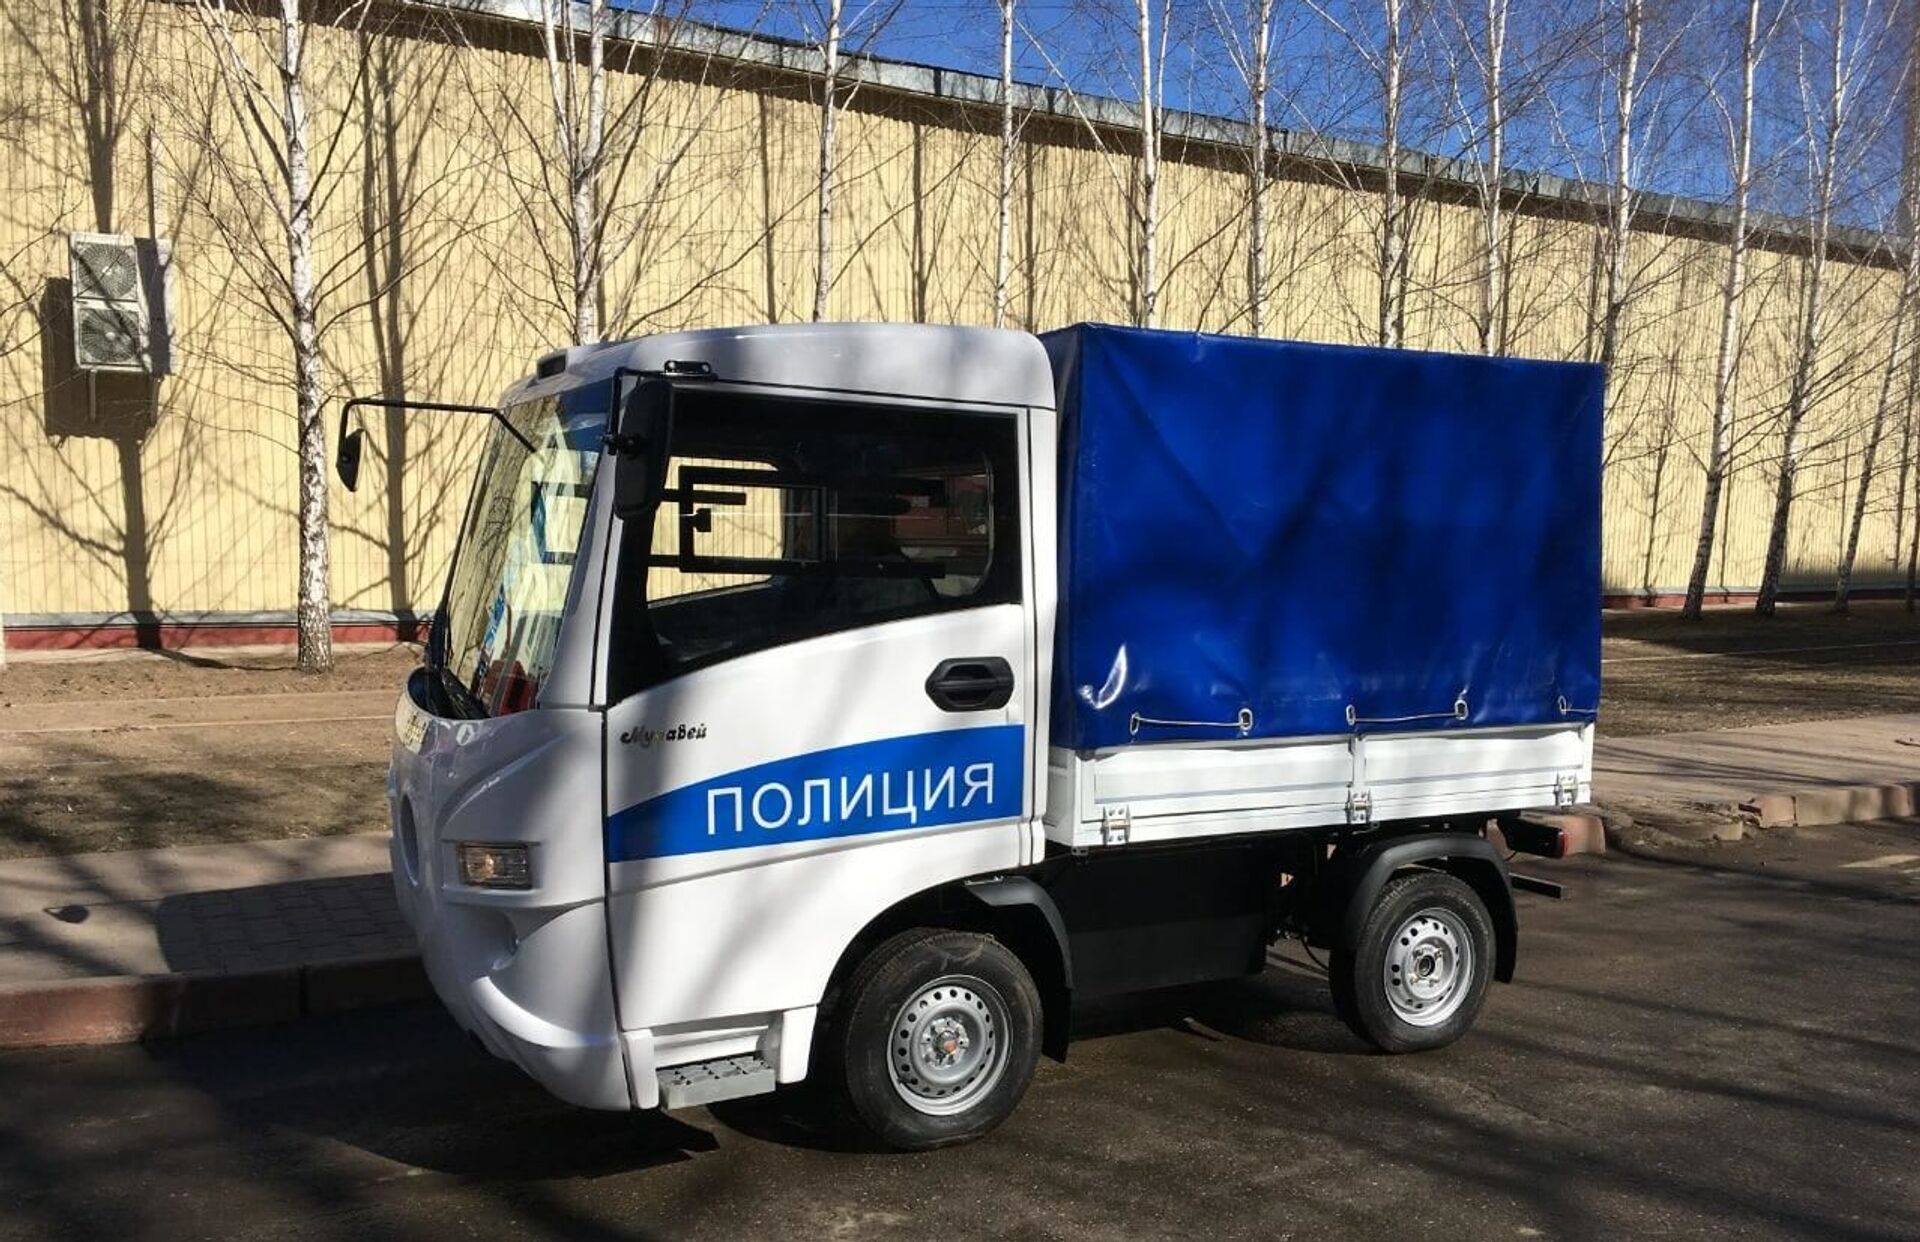 Ở Nga bắt đầu sản xuất xe điện «Muravei» dành cho cảnh sát - Sputnik Việt Nam, 1920, 29.03.2021